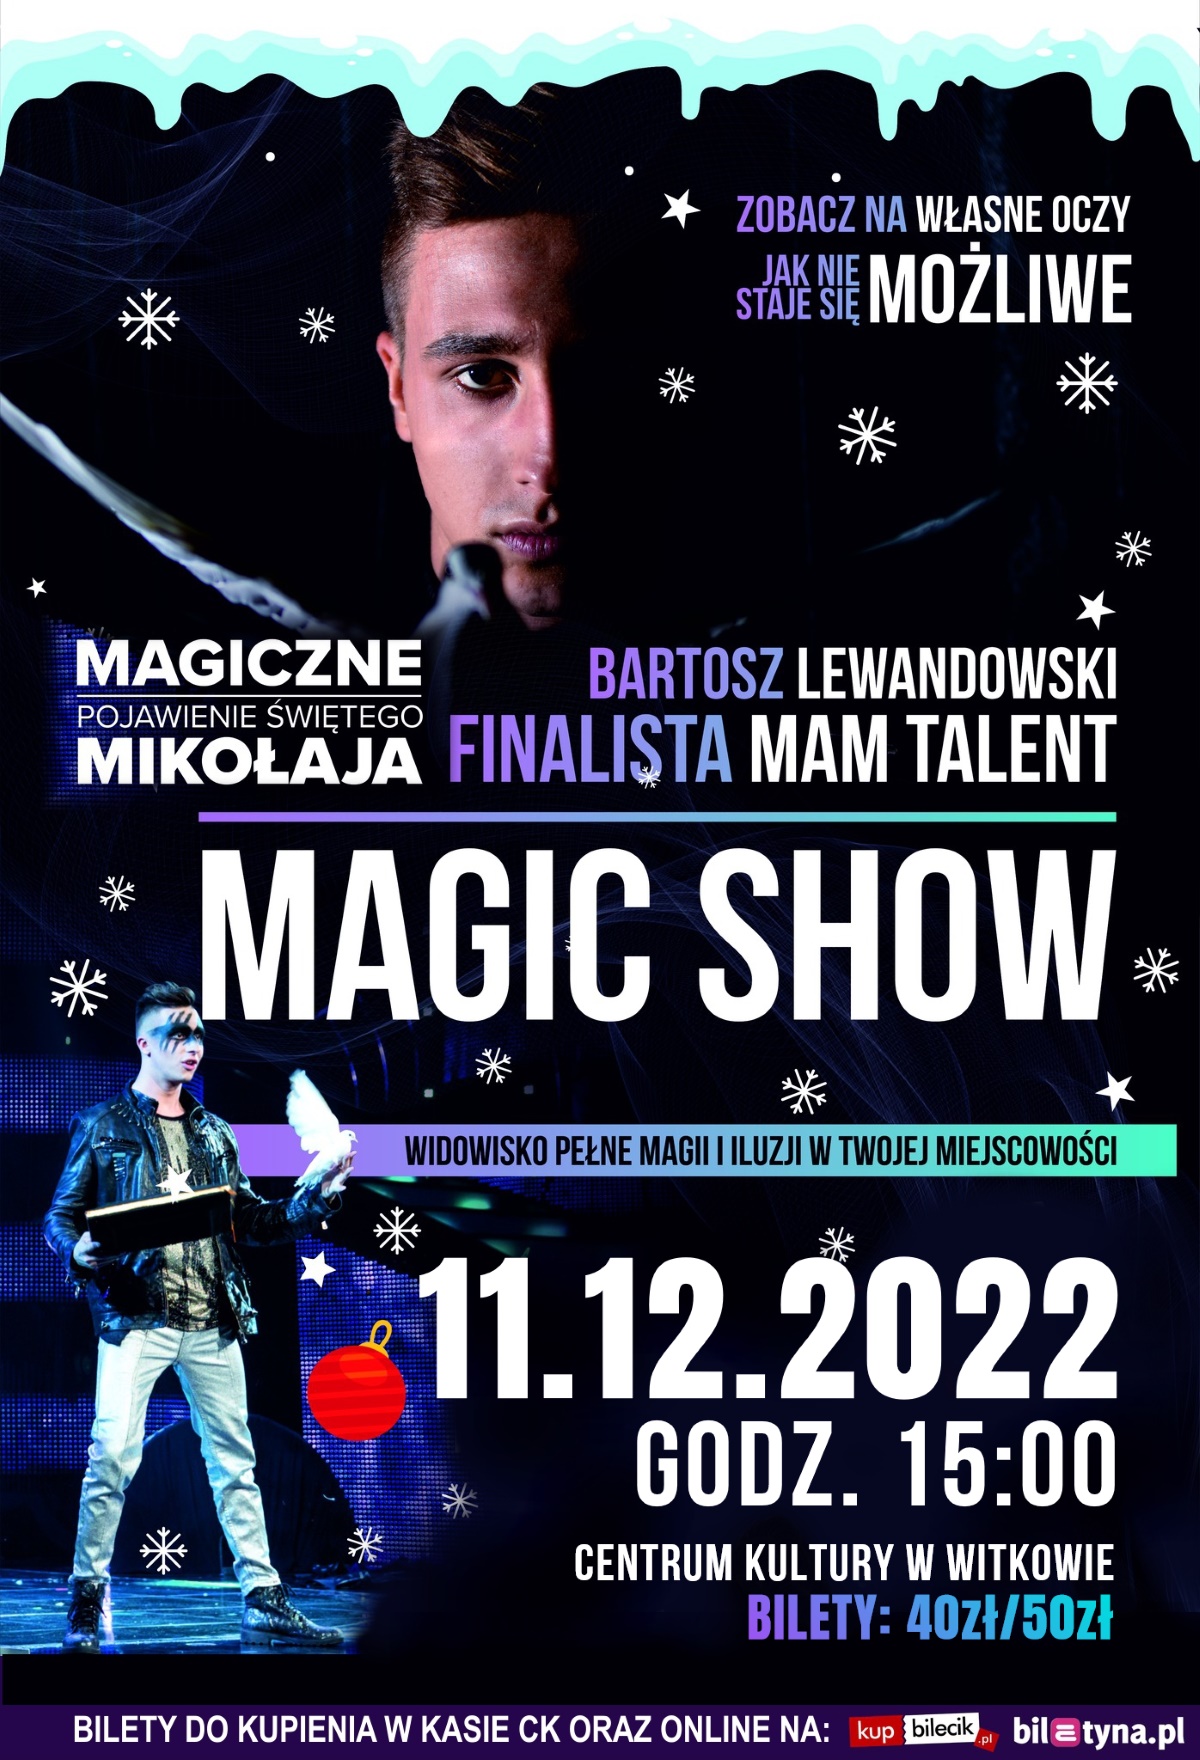 Magic Show - zapraszamy!